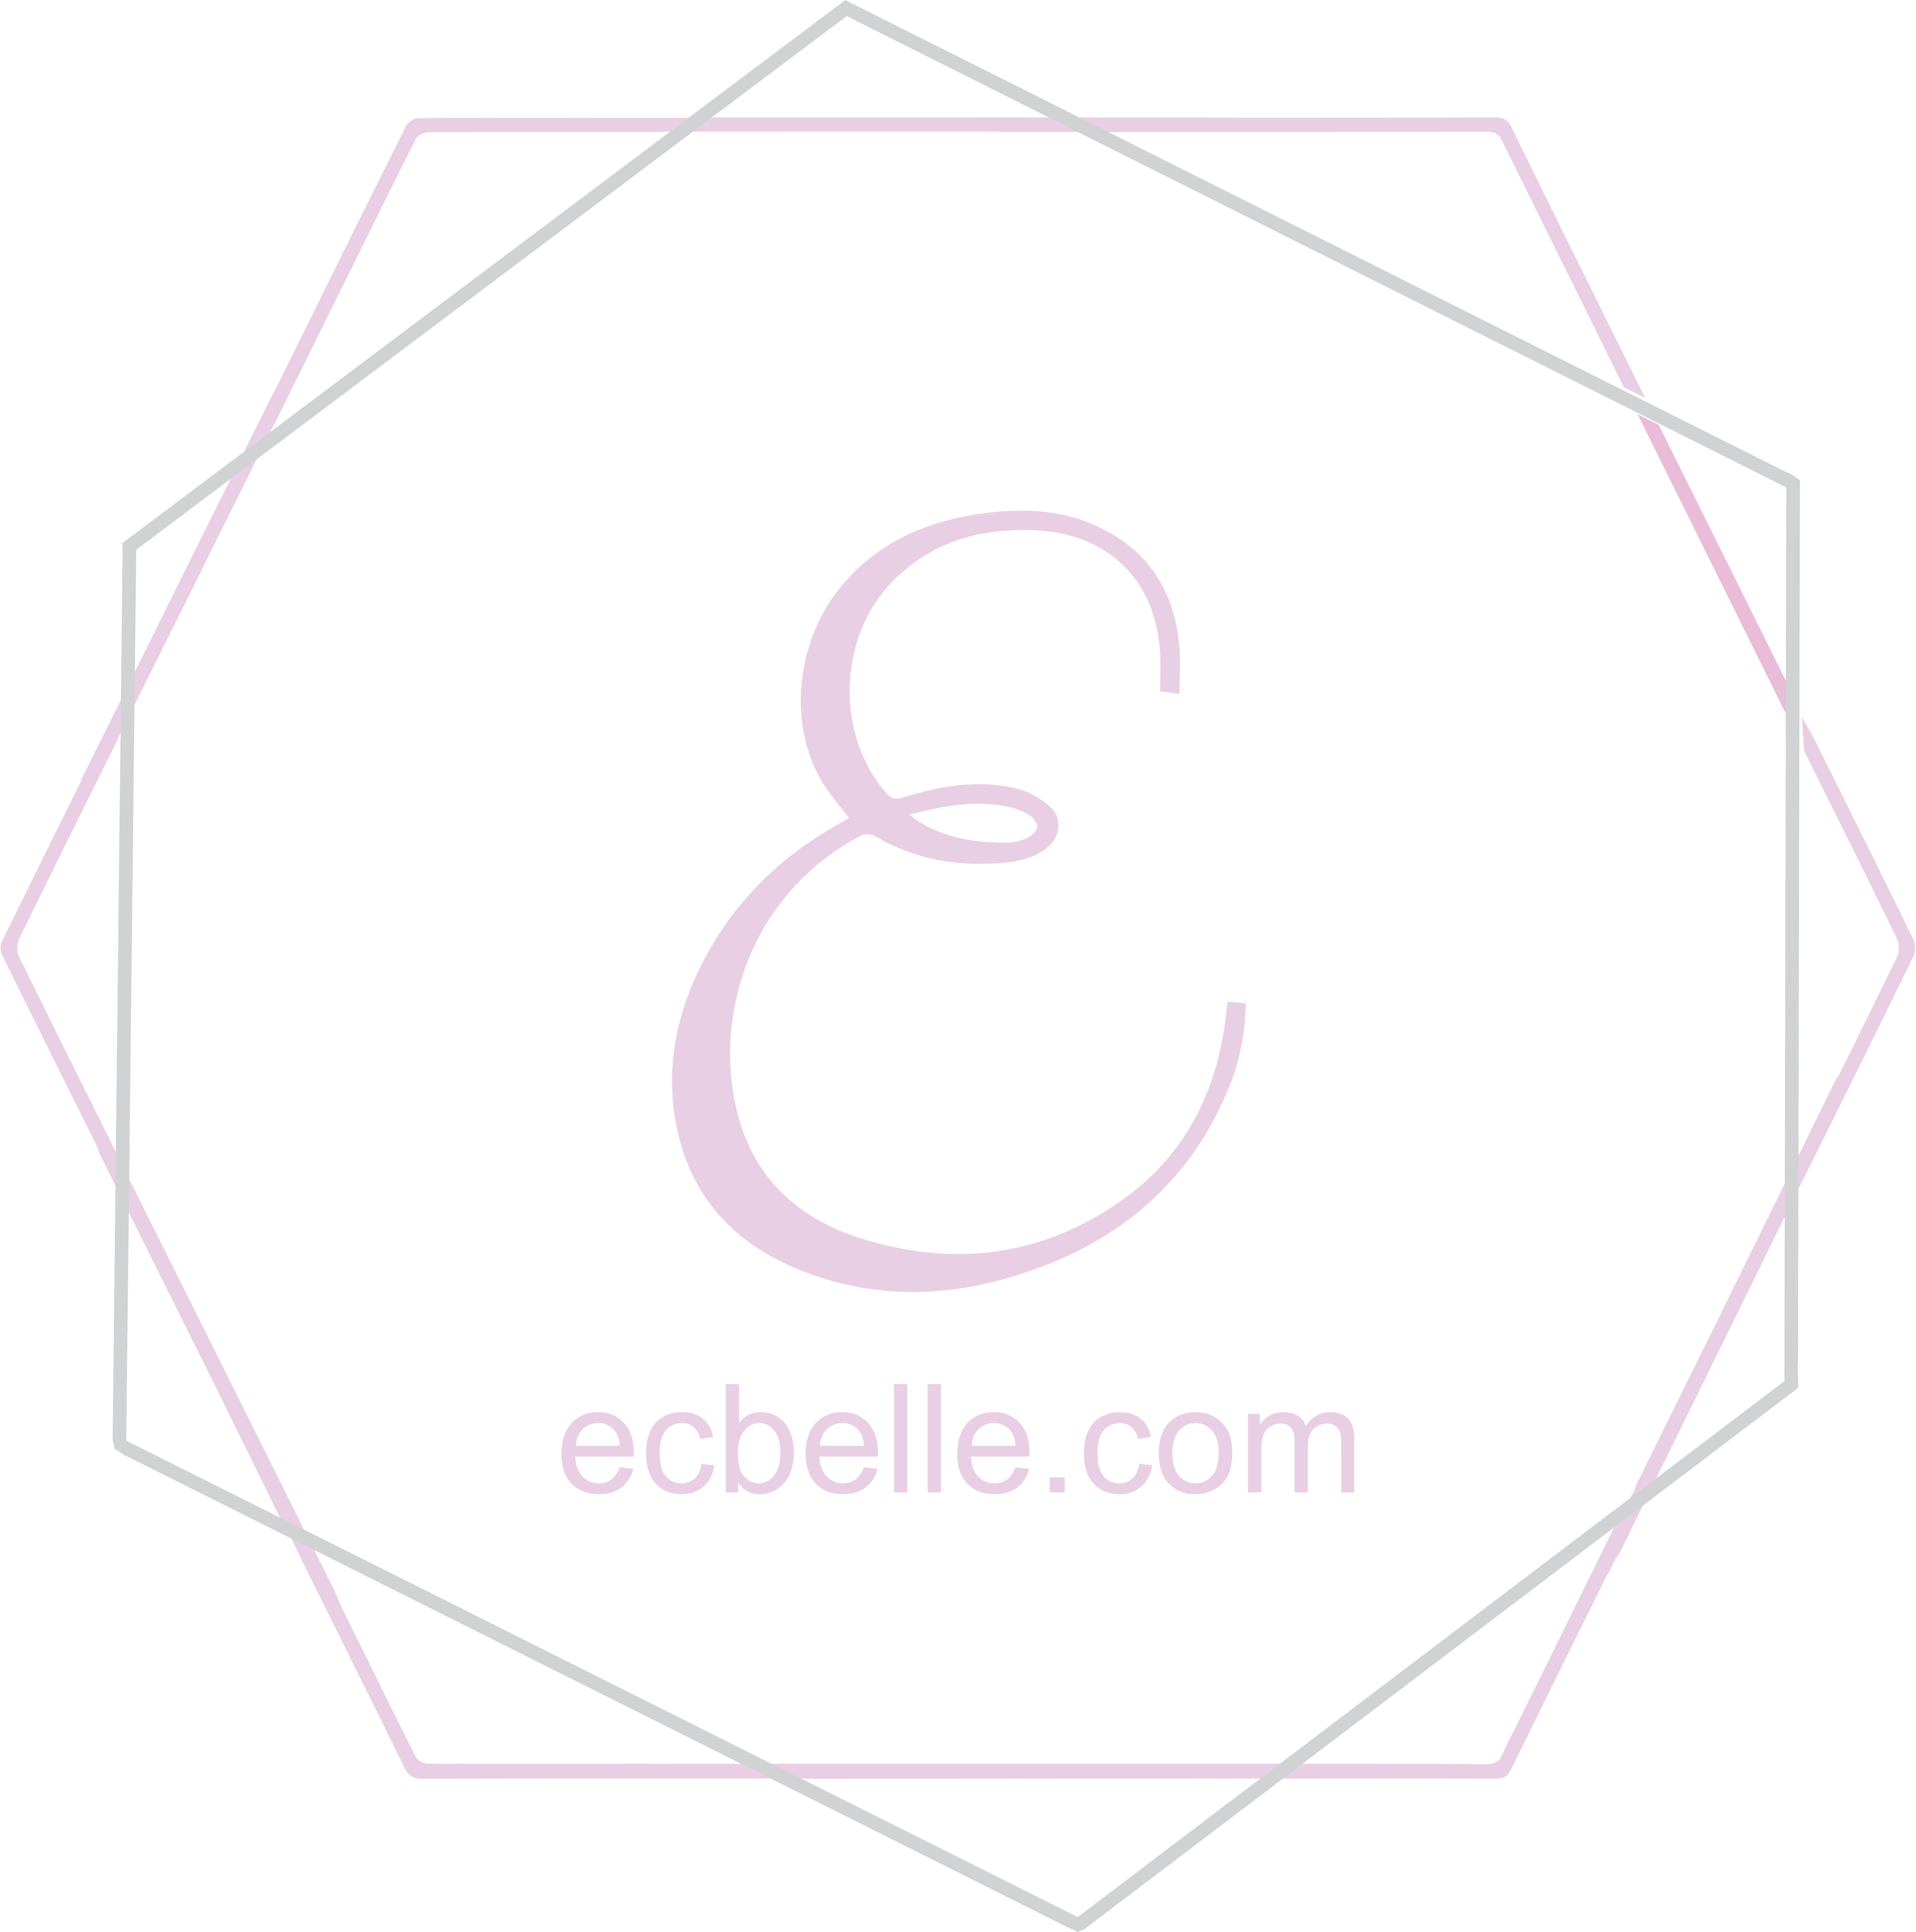 Ecbelle logo